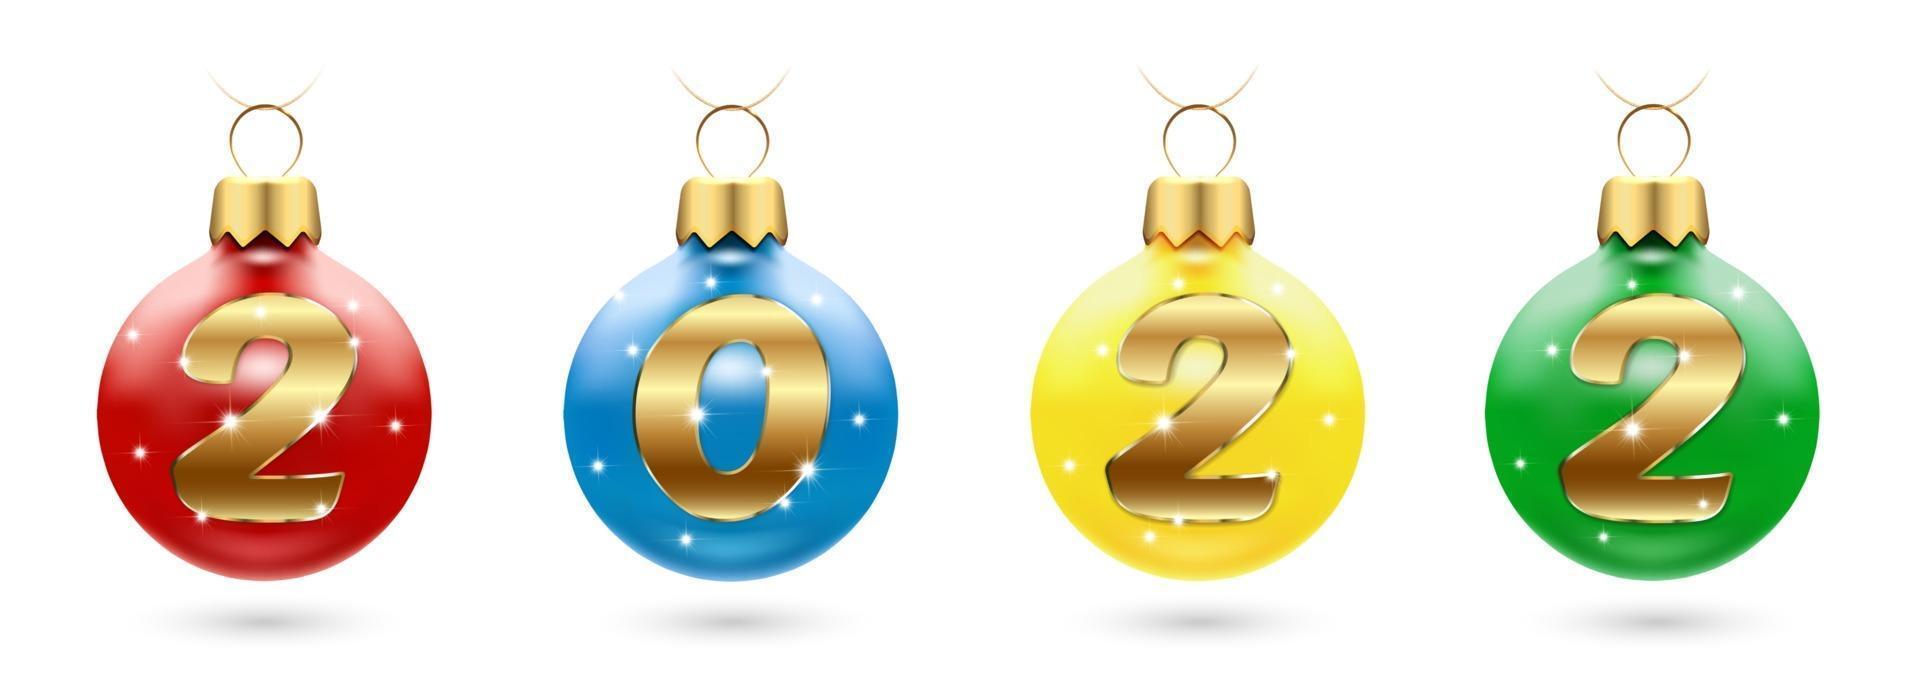 decorações de natal com números 2022 - bolas com diamantes cintilantes. Saudações de feliz ano novo e feliz natal. um conjunto de quatro brinquedos em cores diferentes. Isolado em um fundo branco. ilustração vetorial. vetor